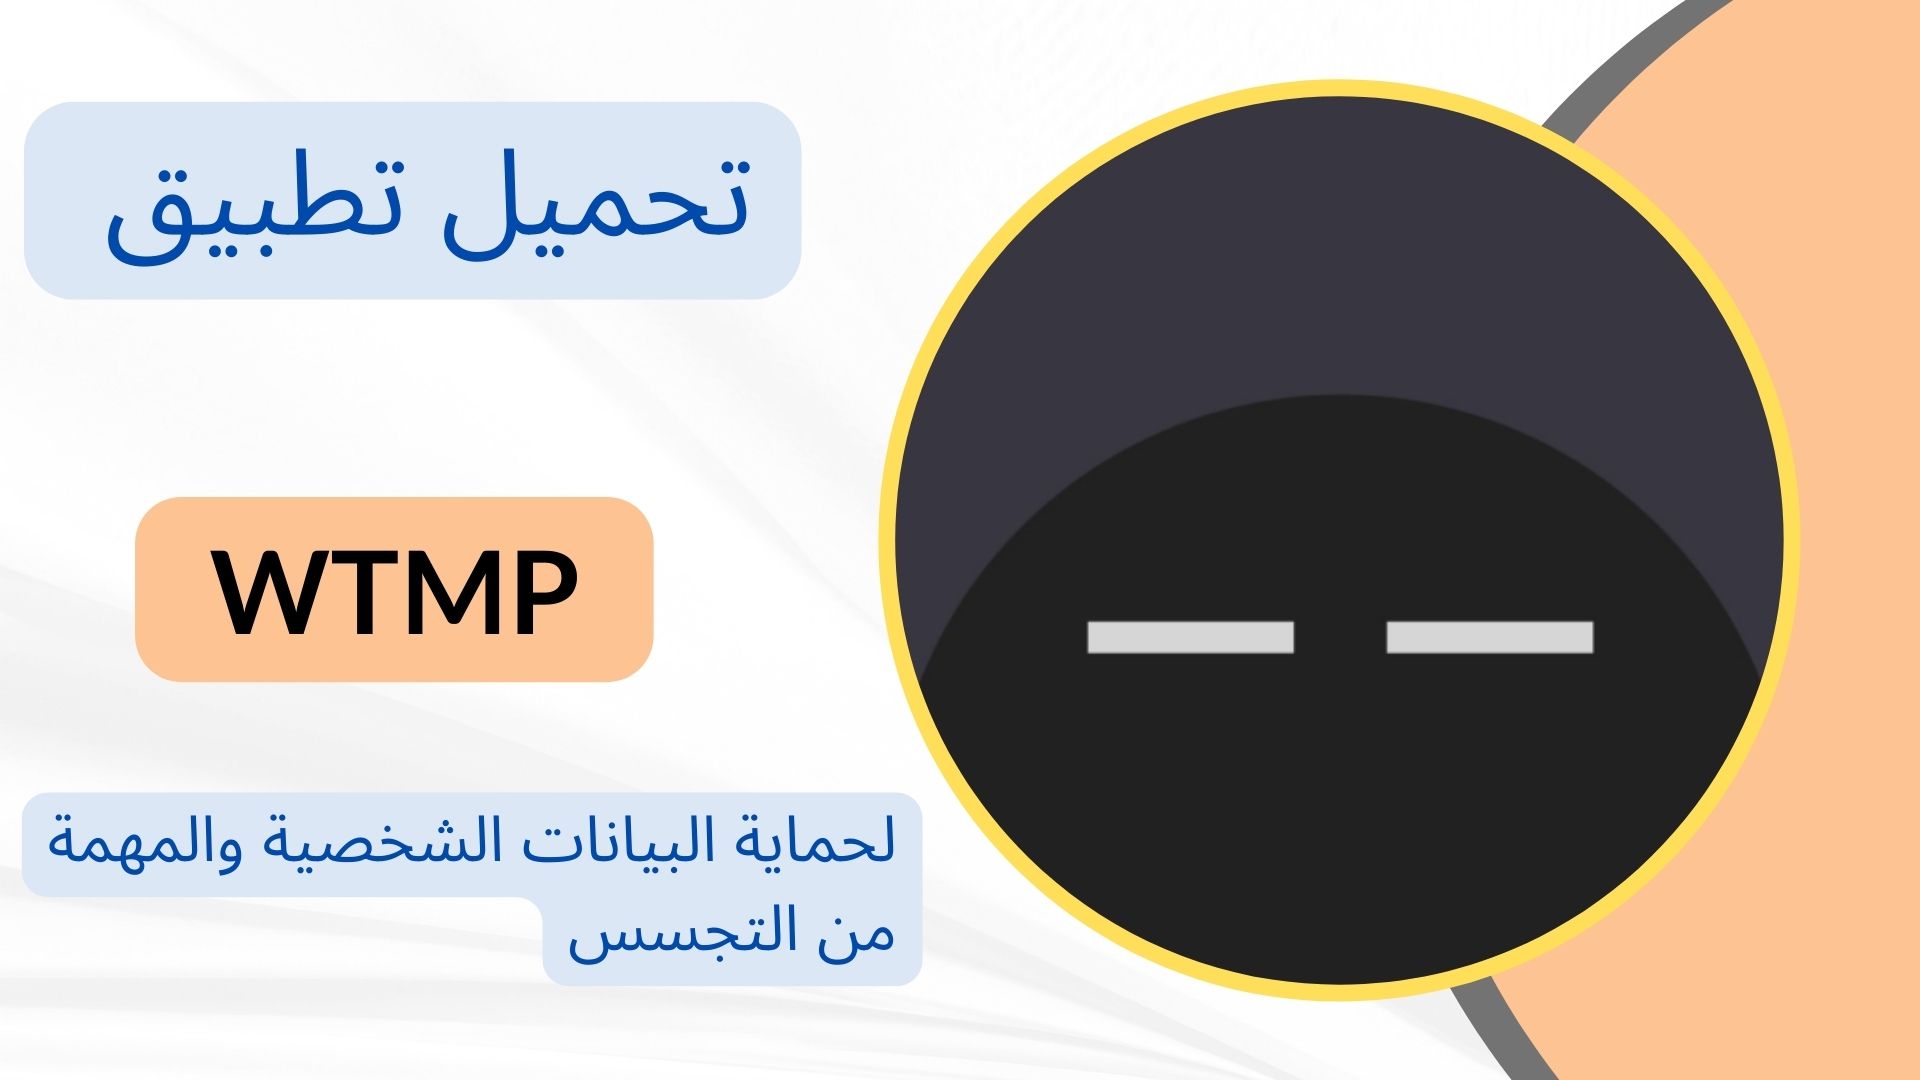 تحميل تطبيق مراقبه استخدام الهاتف WTMP للاندرويد والايفون اخر اصدار